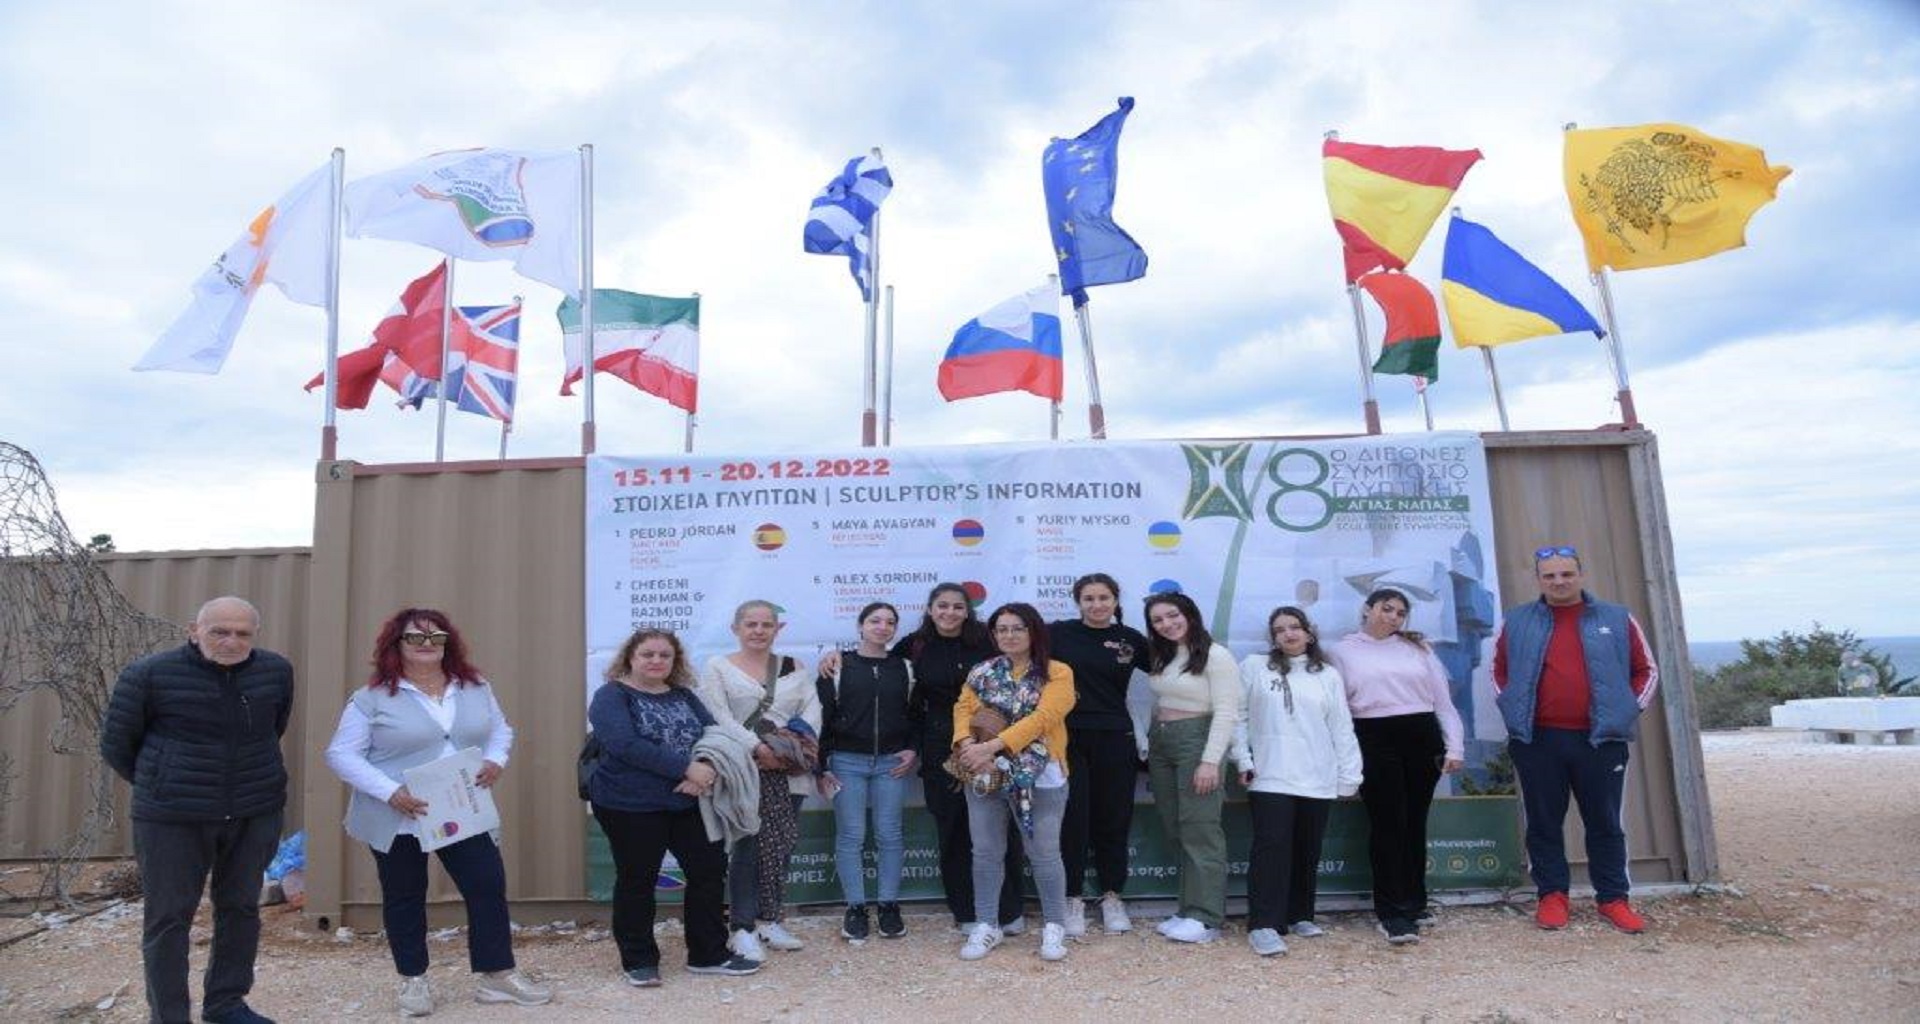 Αγία Νάπα: Στο Διεθνές Πάρκο Γλυπτικής βρέθηκαν οι μαθητές του Λυκείου Ιδαλίου και του Γυμνασίου Λιβαδιών Λάρνακας